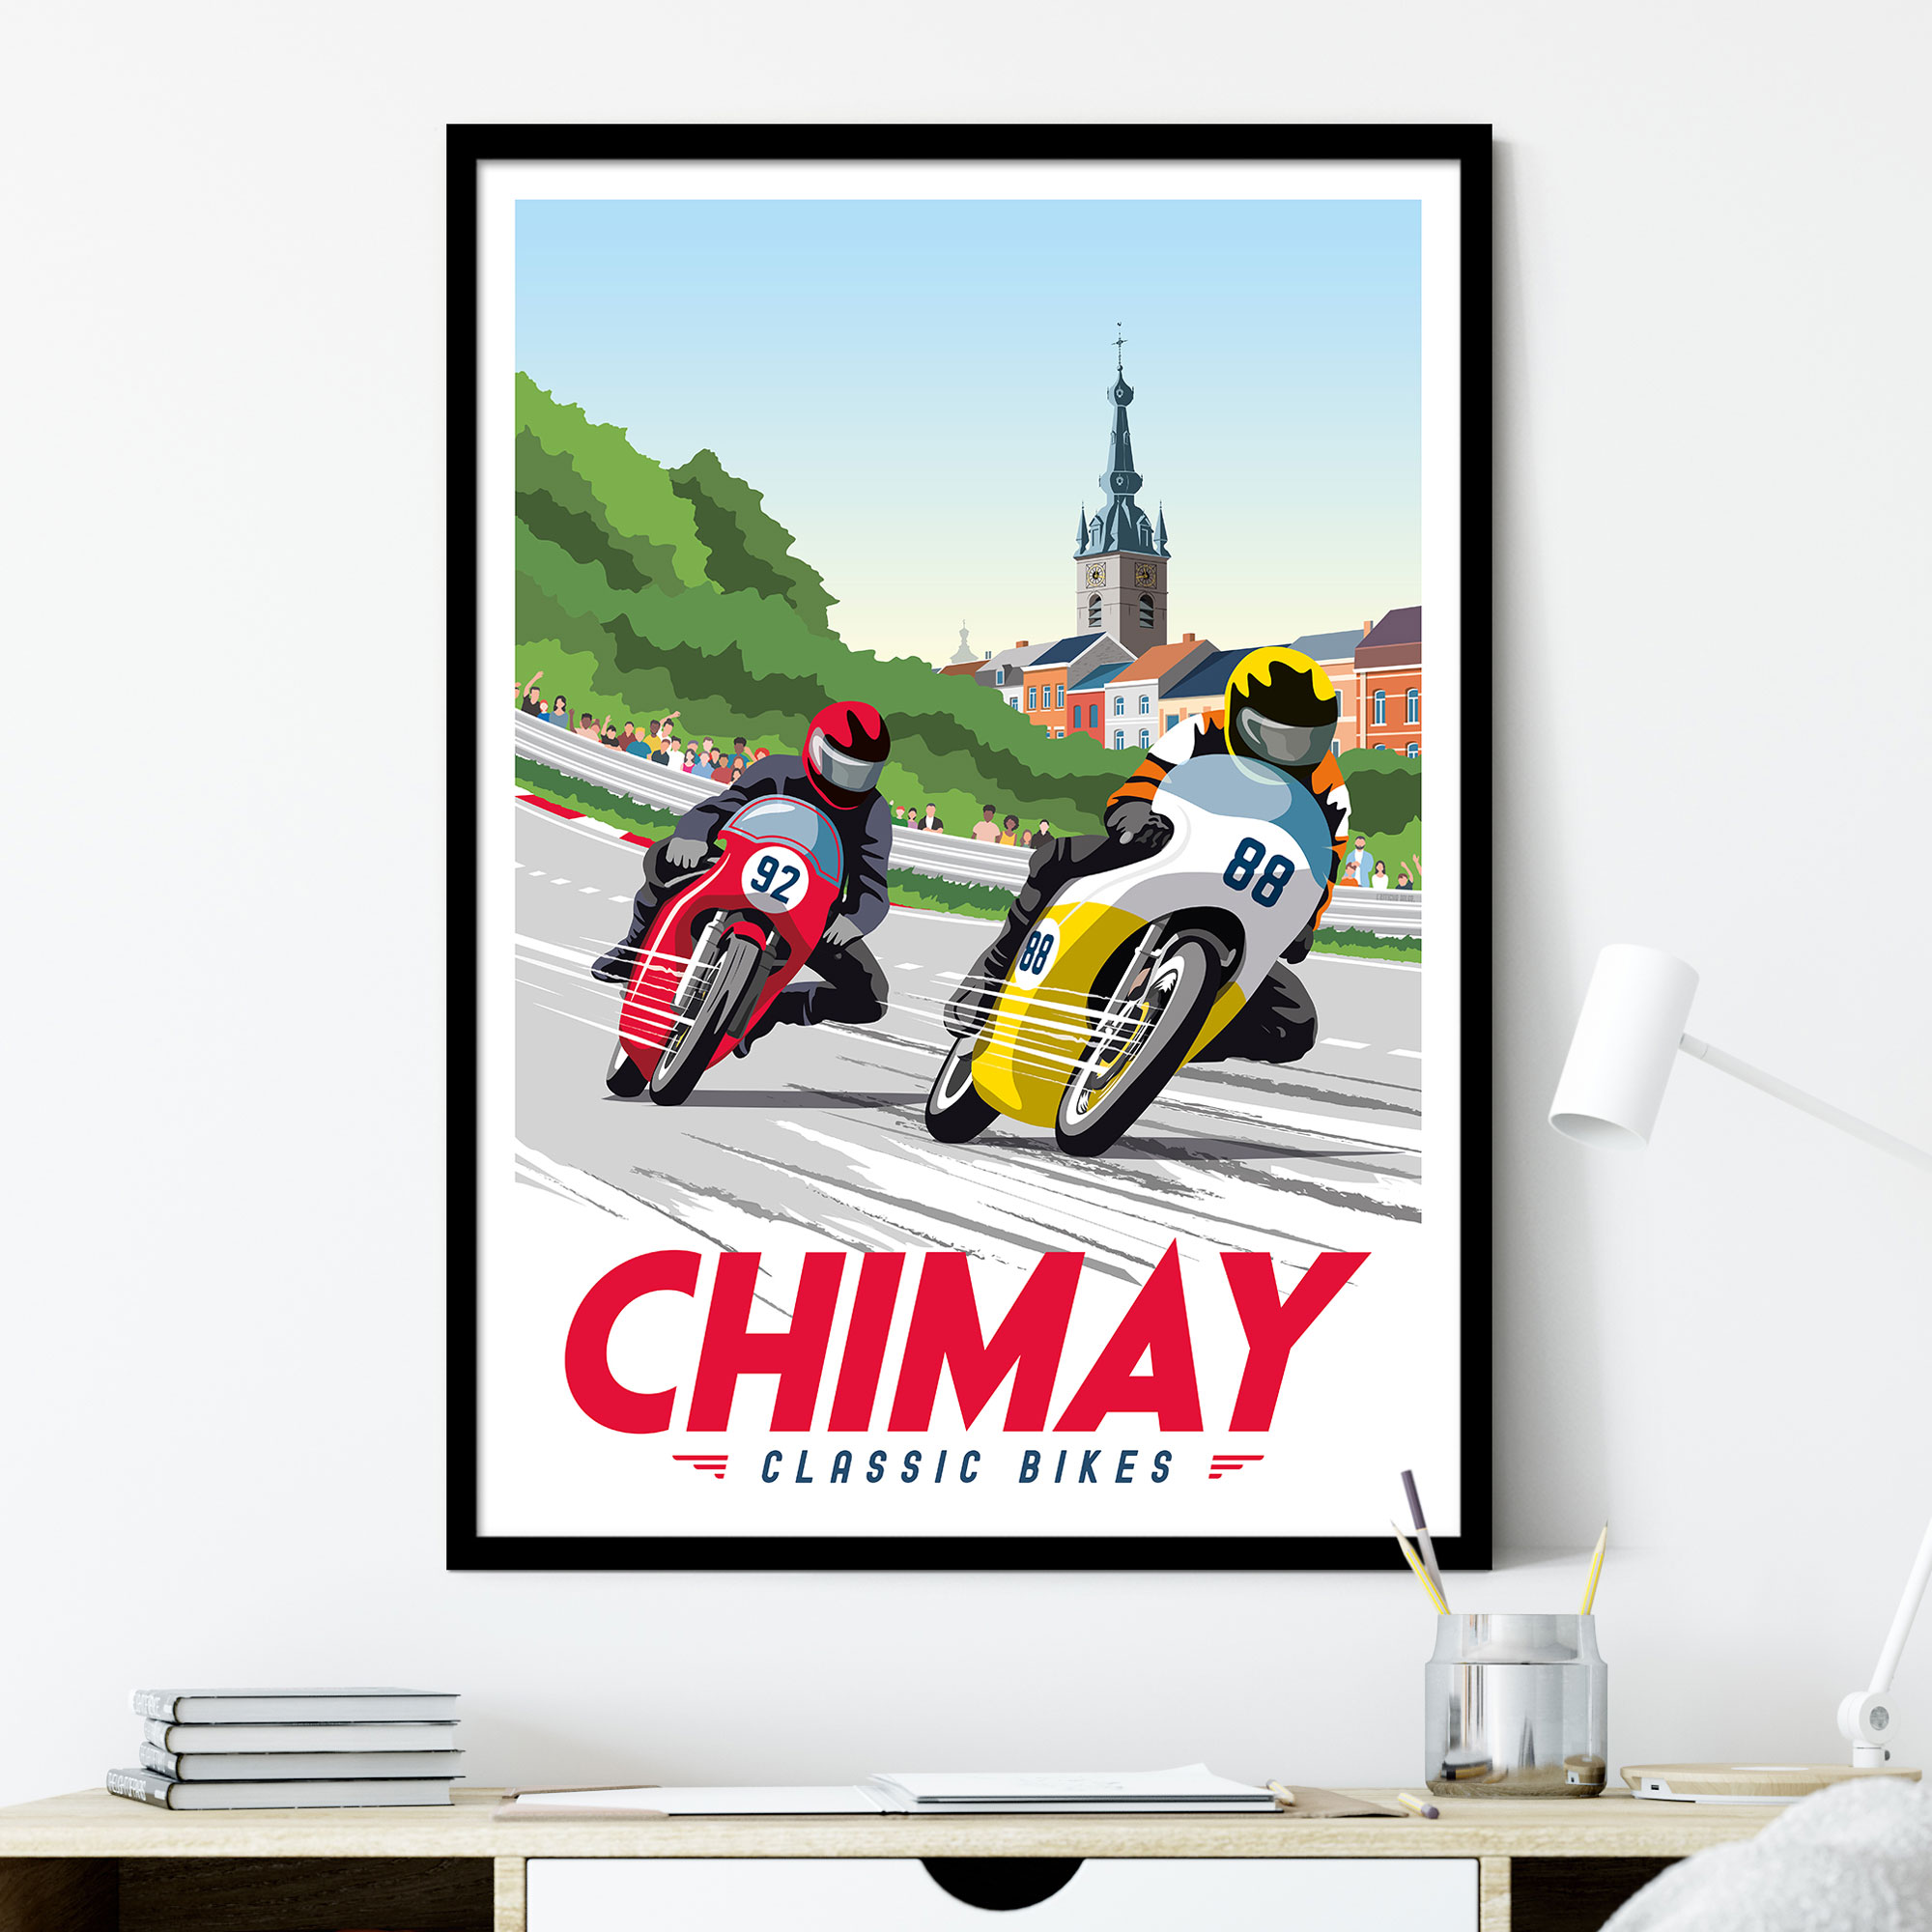 Chimay - Klassieke fietsen